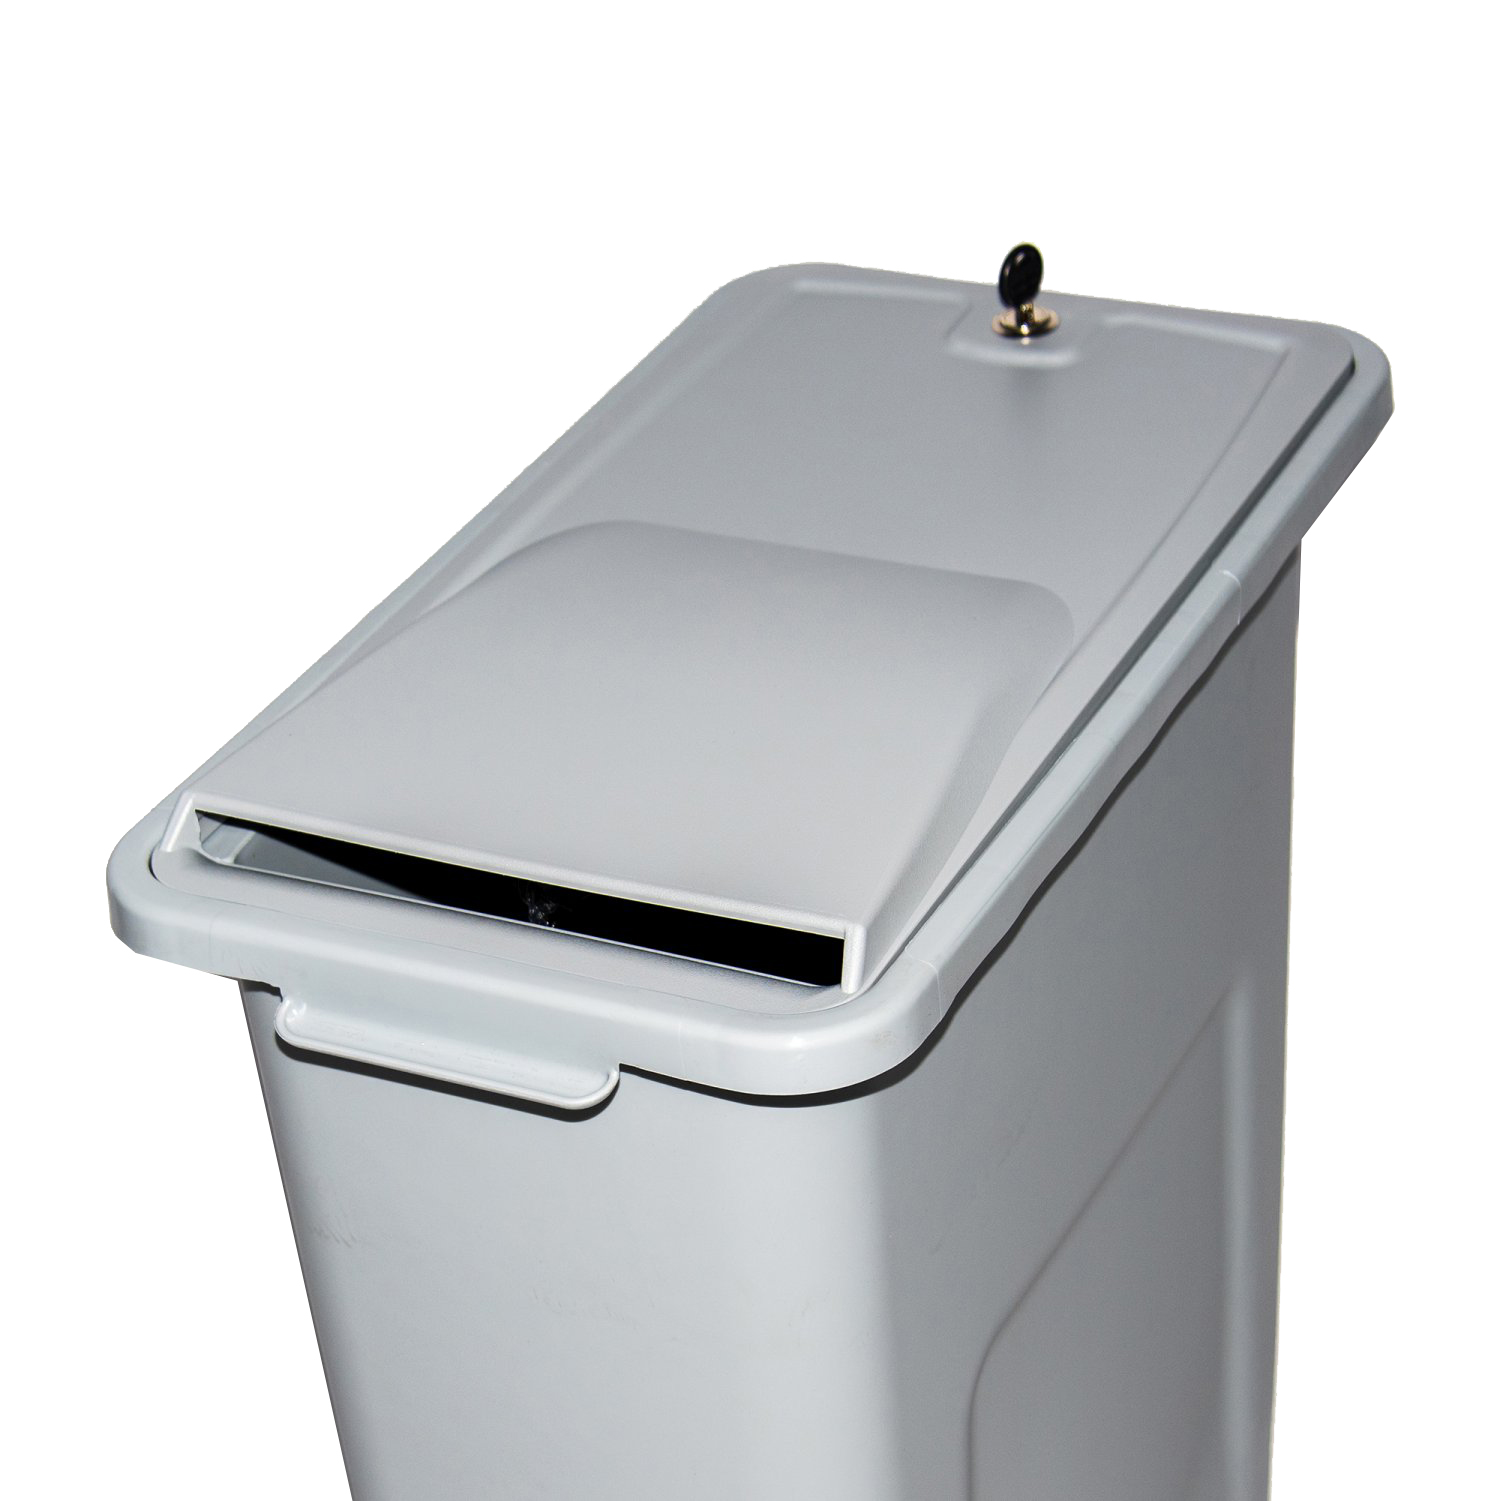 SHRED-L-44-LOCK Shredinator La collecte de documents confidentiel dans le Shredinator.

Le Shredinator est une poubelle grise de 87 litres destinée à la collecte de documents confidentiels. Grâce au couvercle avec serrure, vos documents collectés sont en sécurité. En reliant plusieurs Shredinator à l'aide d'un connecteur, vous pouvez créer votre propre station de déchets. Et grâce à des autocollants, vous pouvez indiquer à quel type de déchets la poubelle est destinée. Nous recommandons l'achat d'un ensemble complet, mais vous pouvez également commander le couvercle et le connecteur séparément.